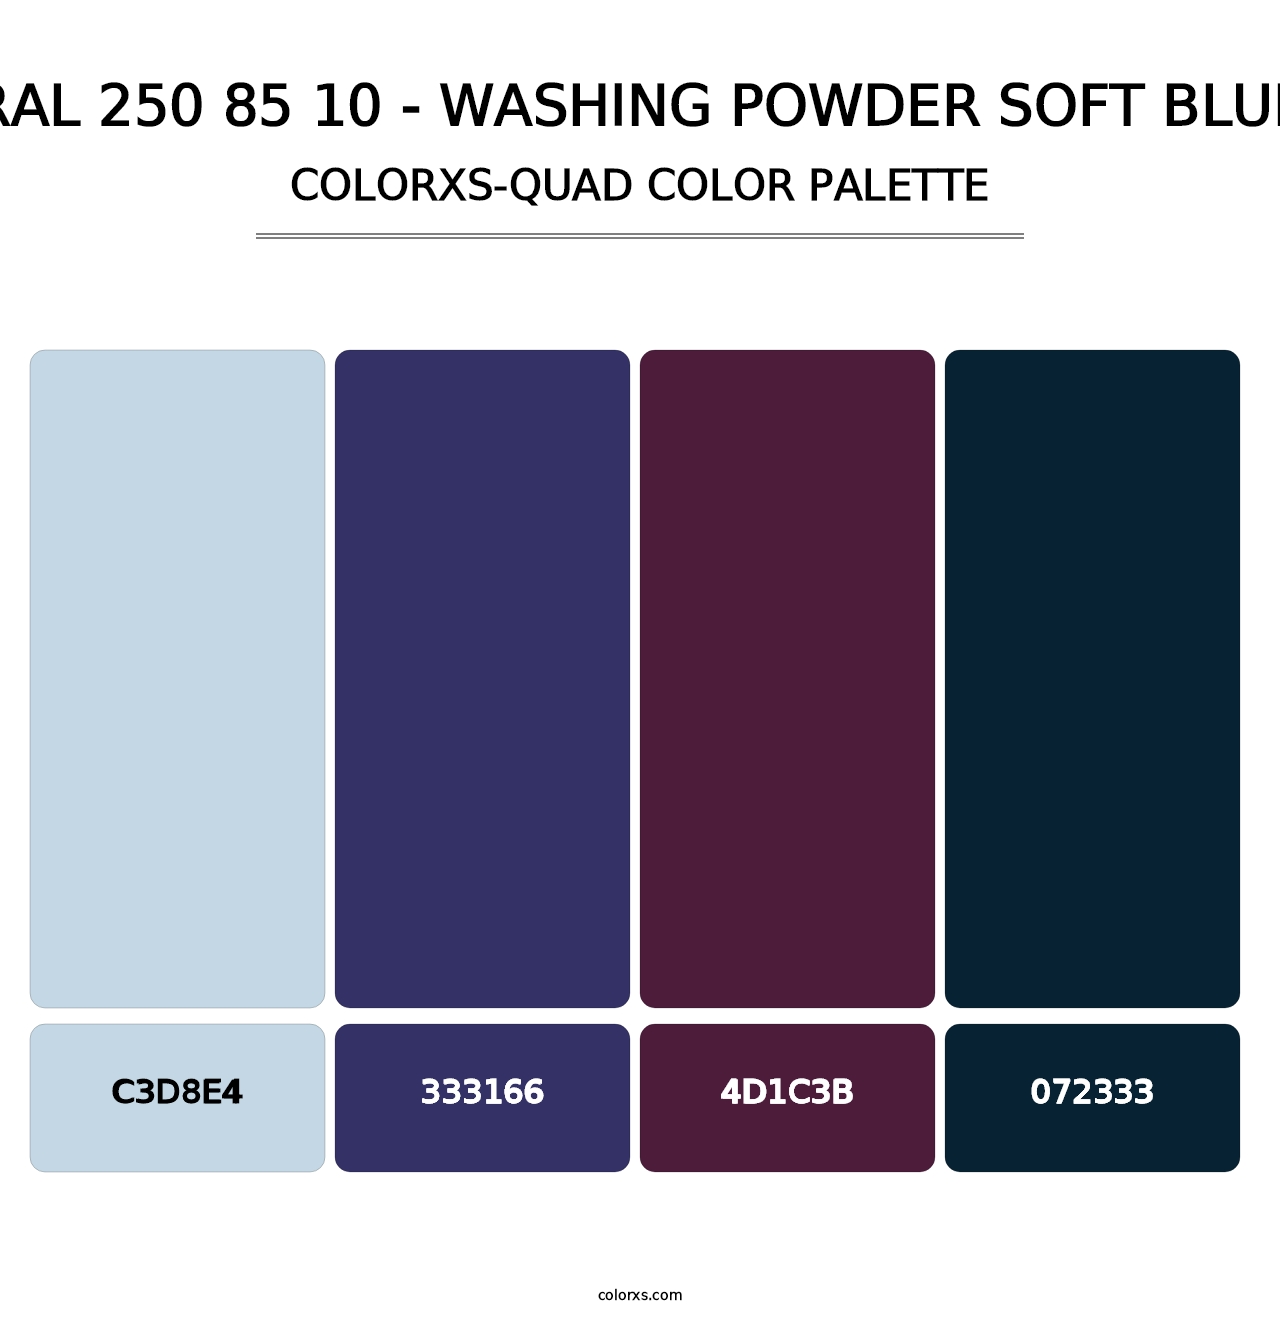 RAL 250 85 10 - Washing Powder Soft Blue - Colorxs Quad Palette